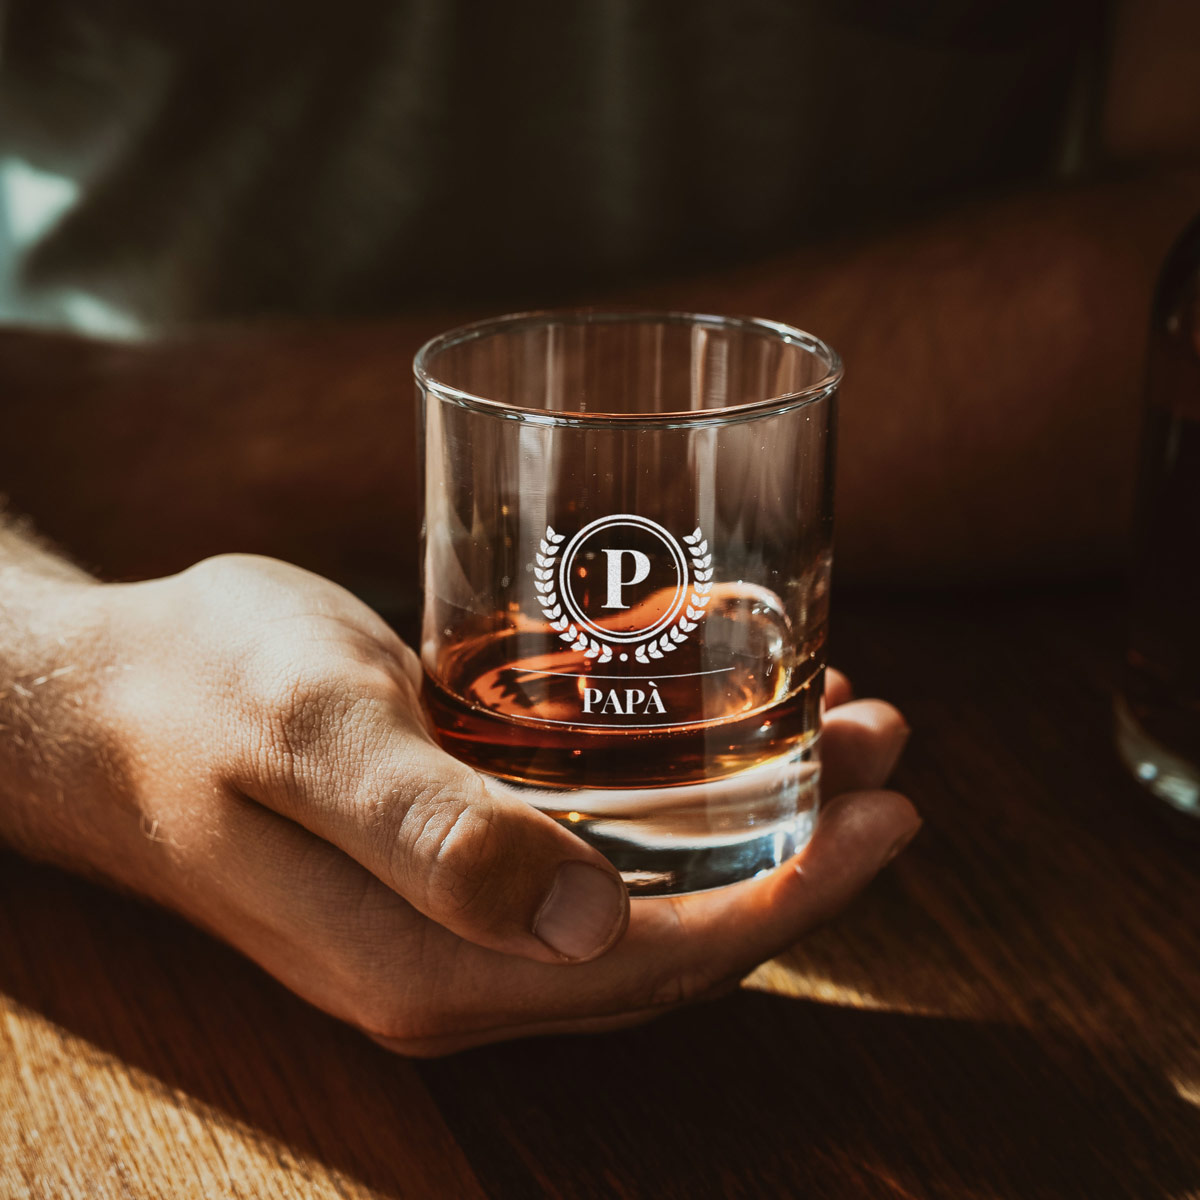 Vaso de whisky personalizado con monograma